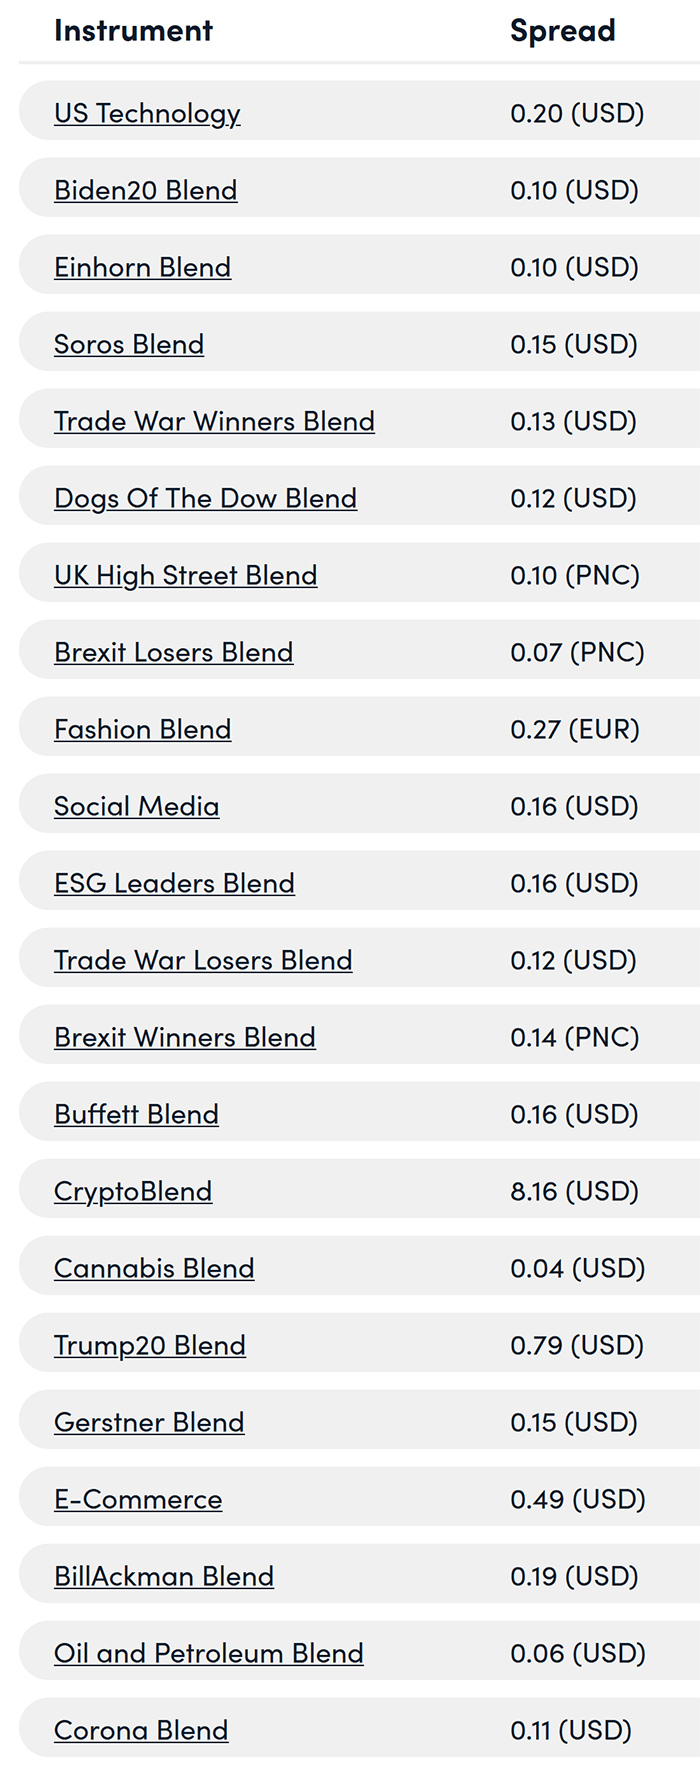 Markets.com Blend CFD spreads